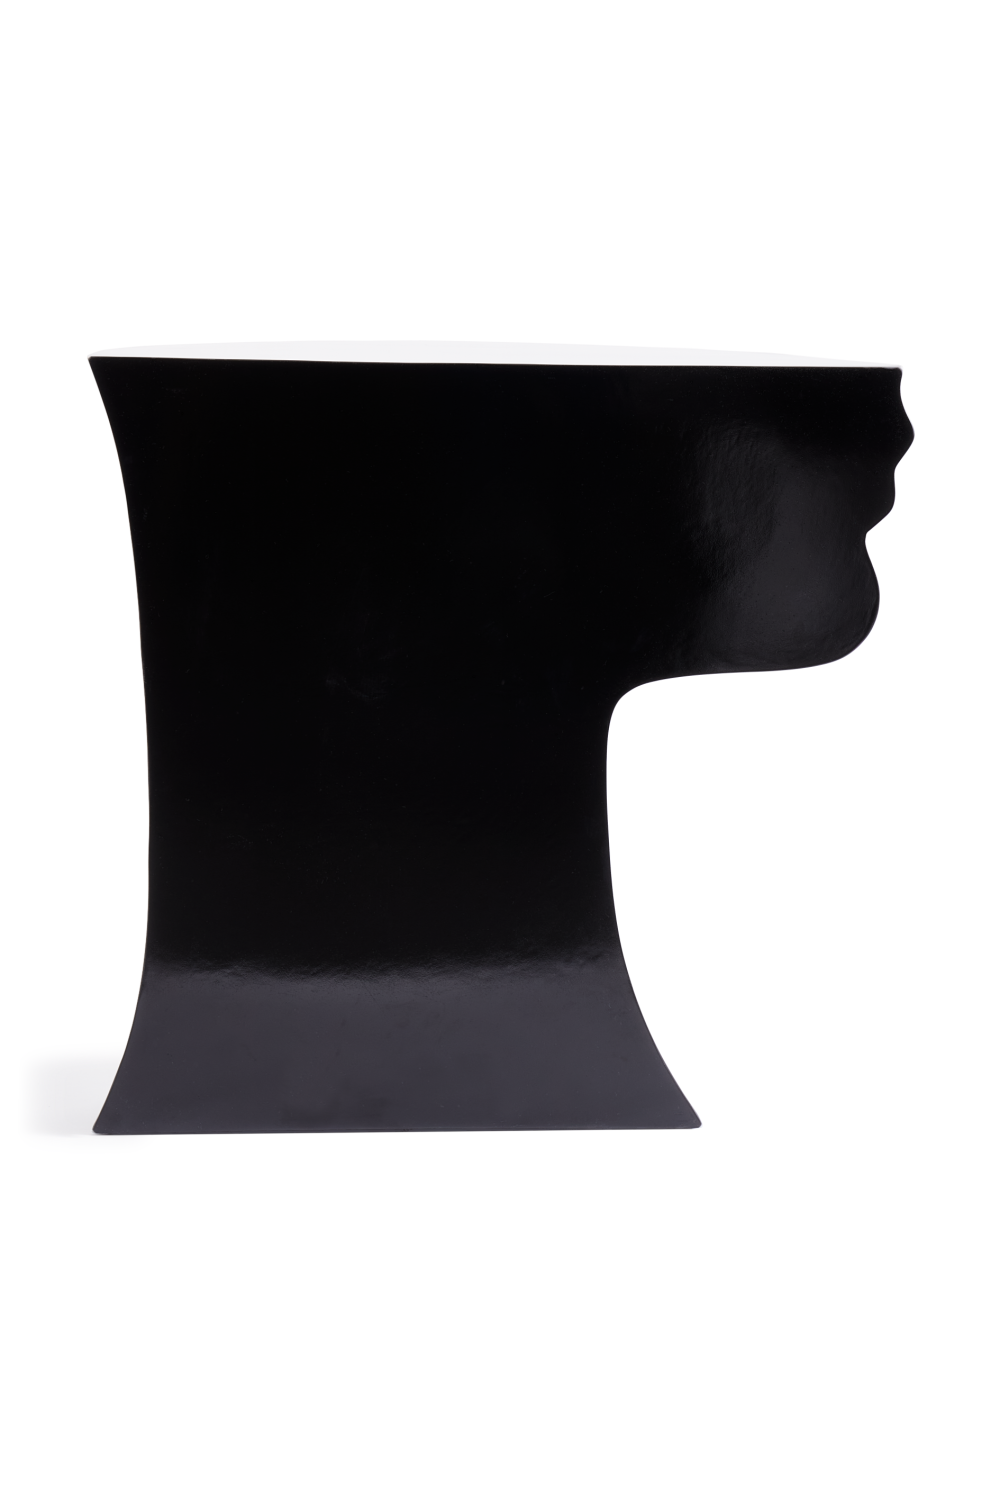 Black Sculptural Chin Coffee Table | Pols Potten Head Right | Oroa.com